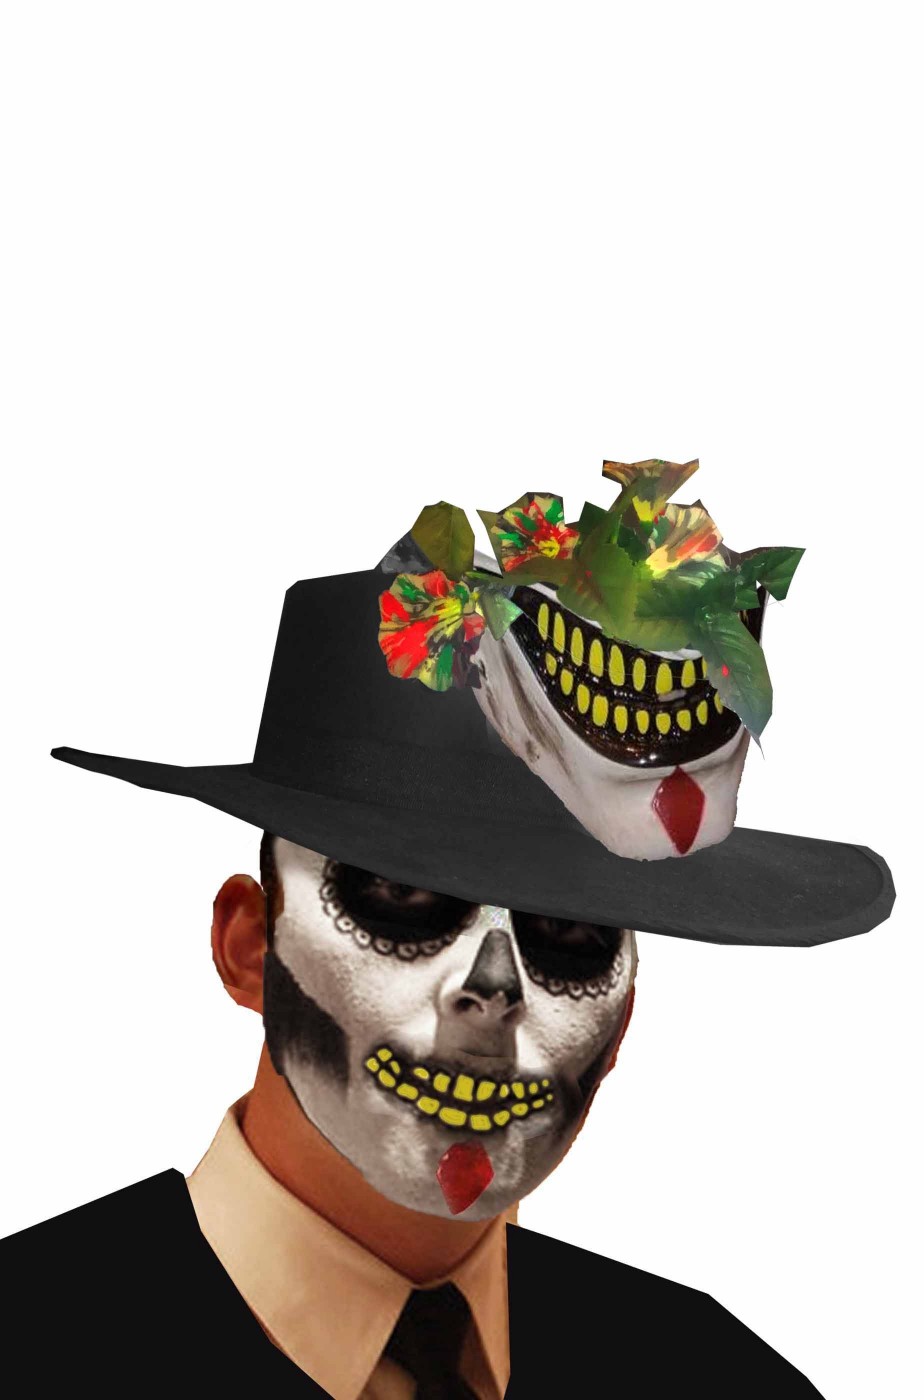 Cappello bolero nero floccato Dia de los muertos con bocca jester